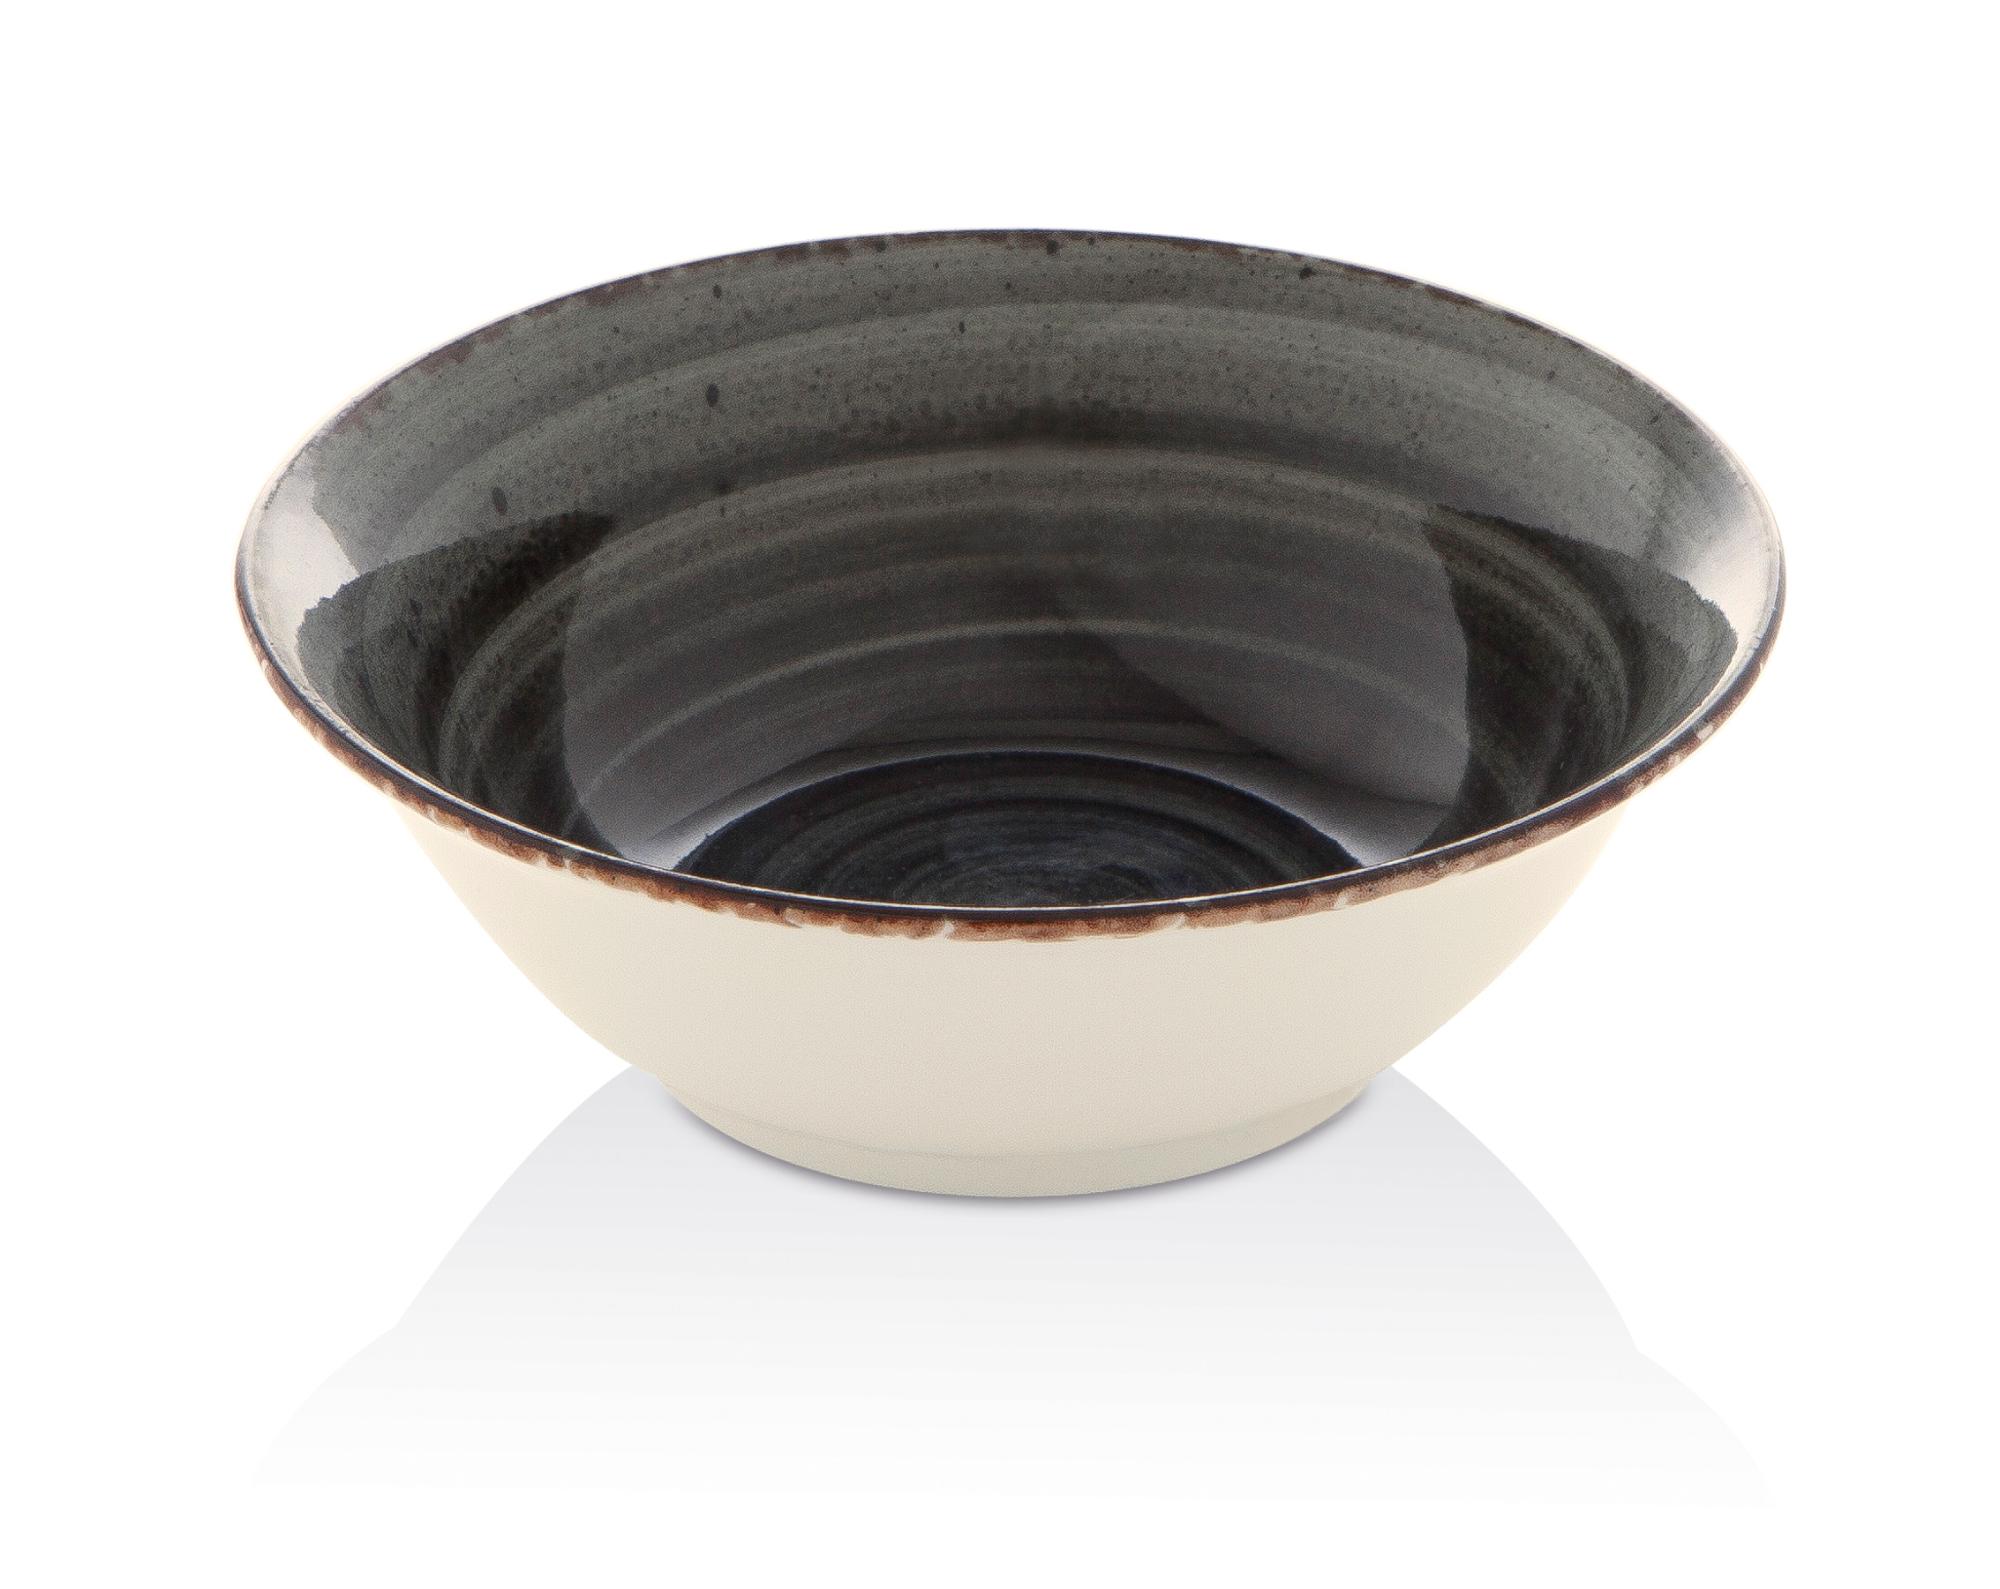 Onyx bowl, 190mm